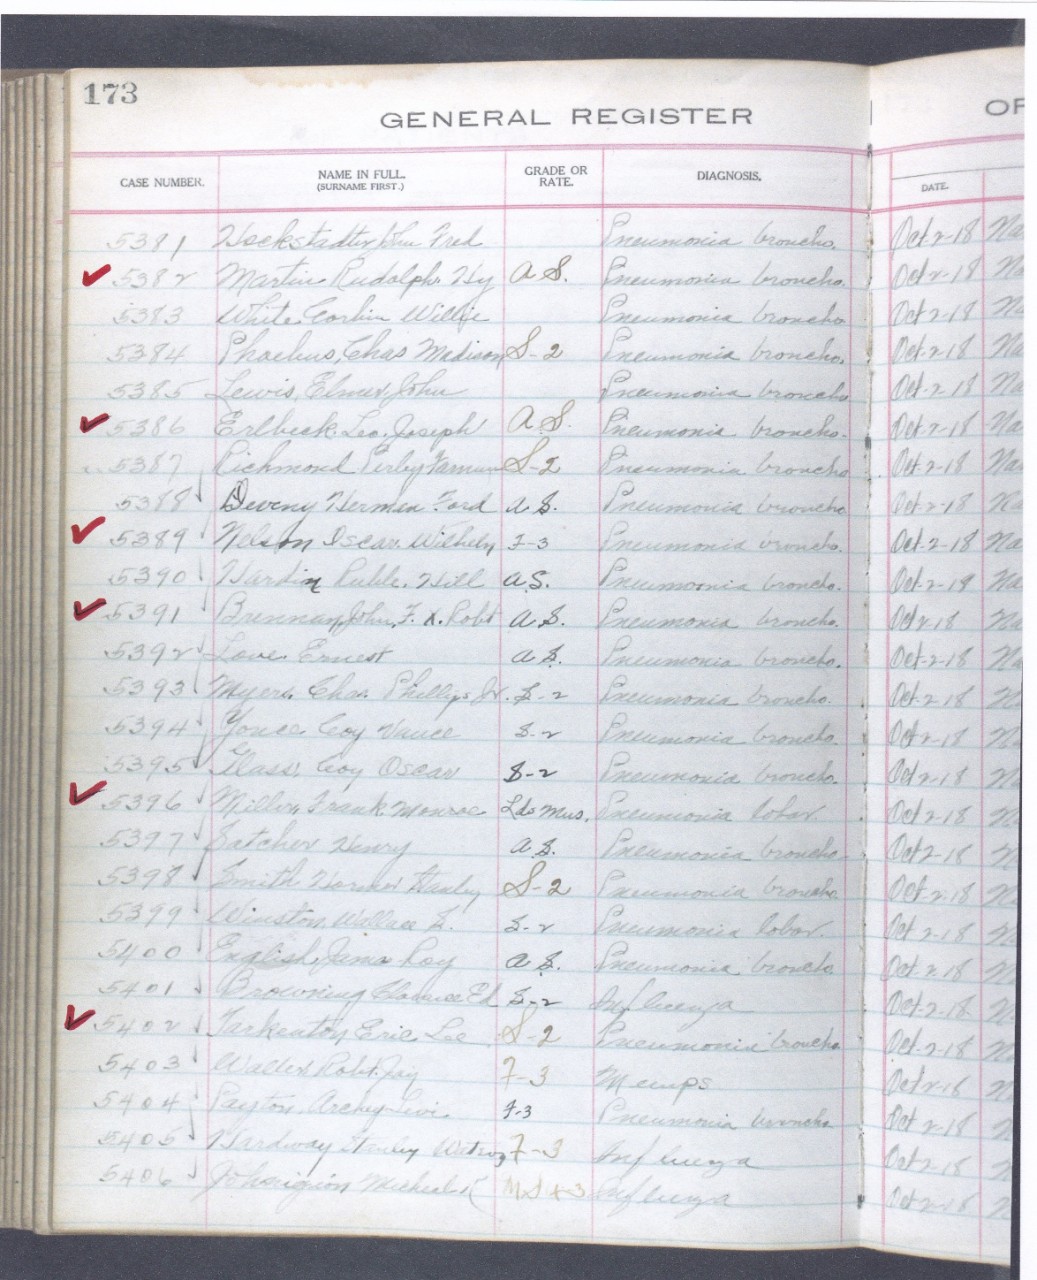 General Register part 1